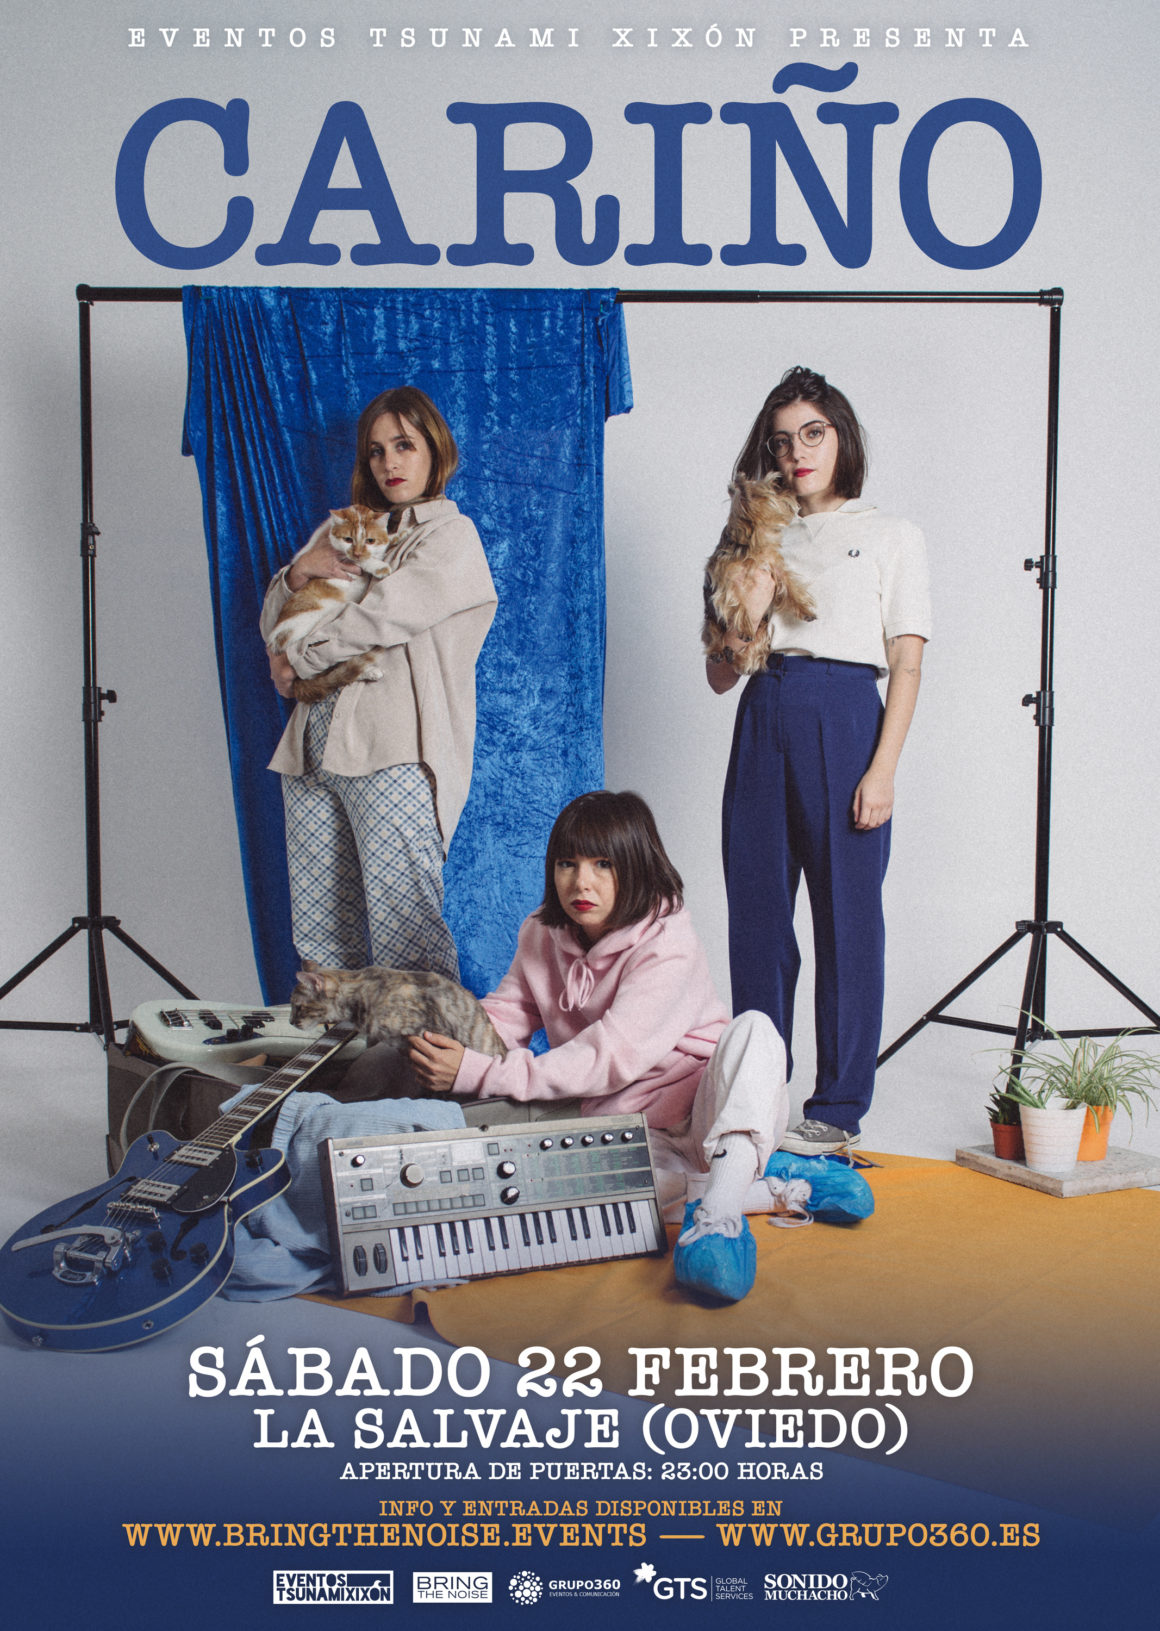 Cariño actuará en Oviedo el próximo sábado 22 de febrero, entradas ya están a la venta